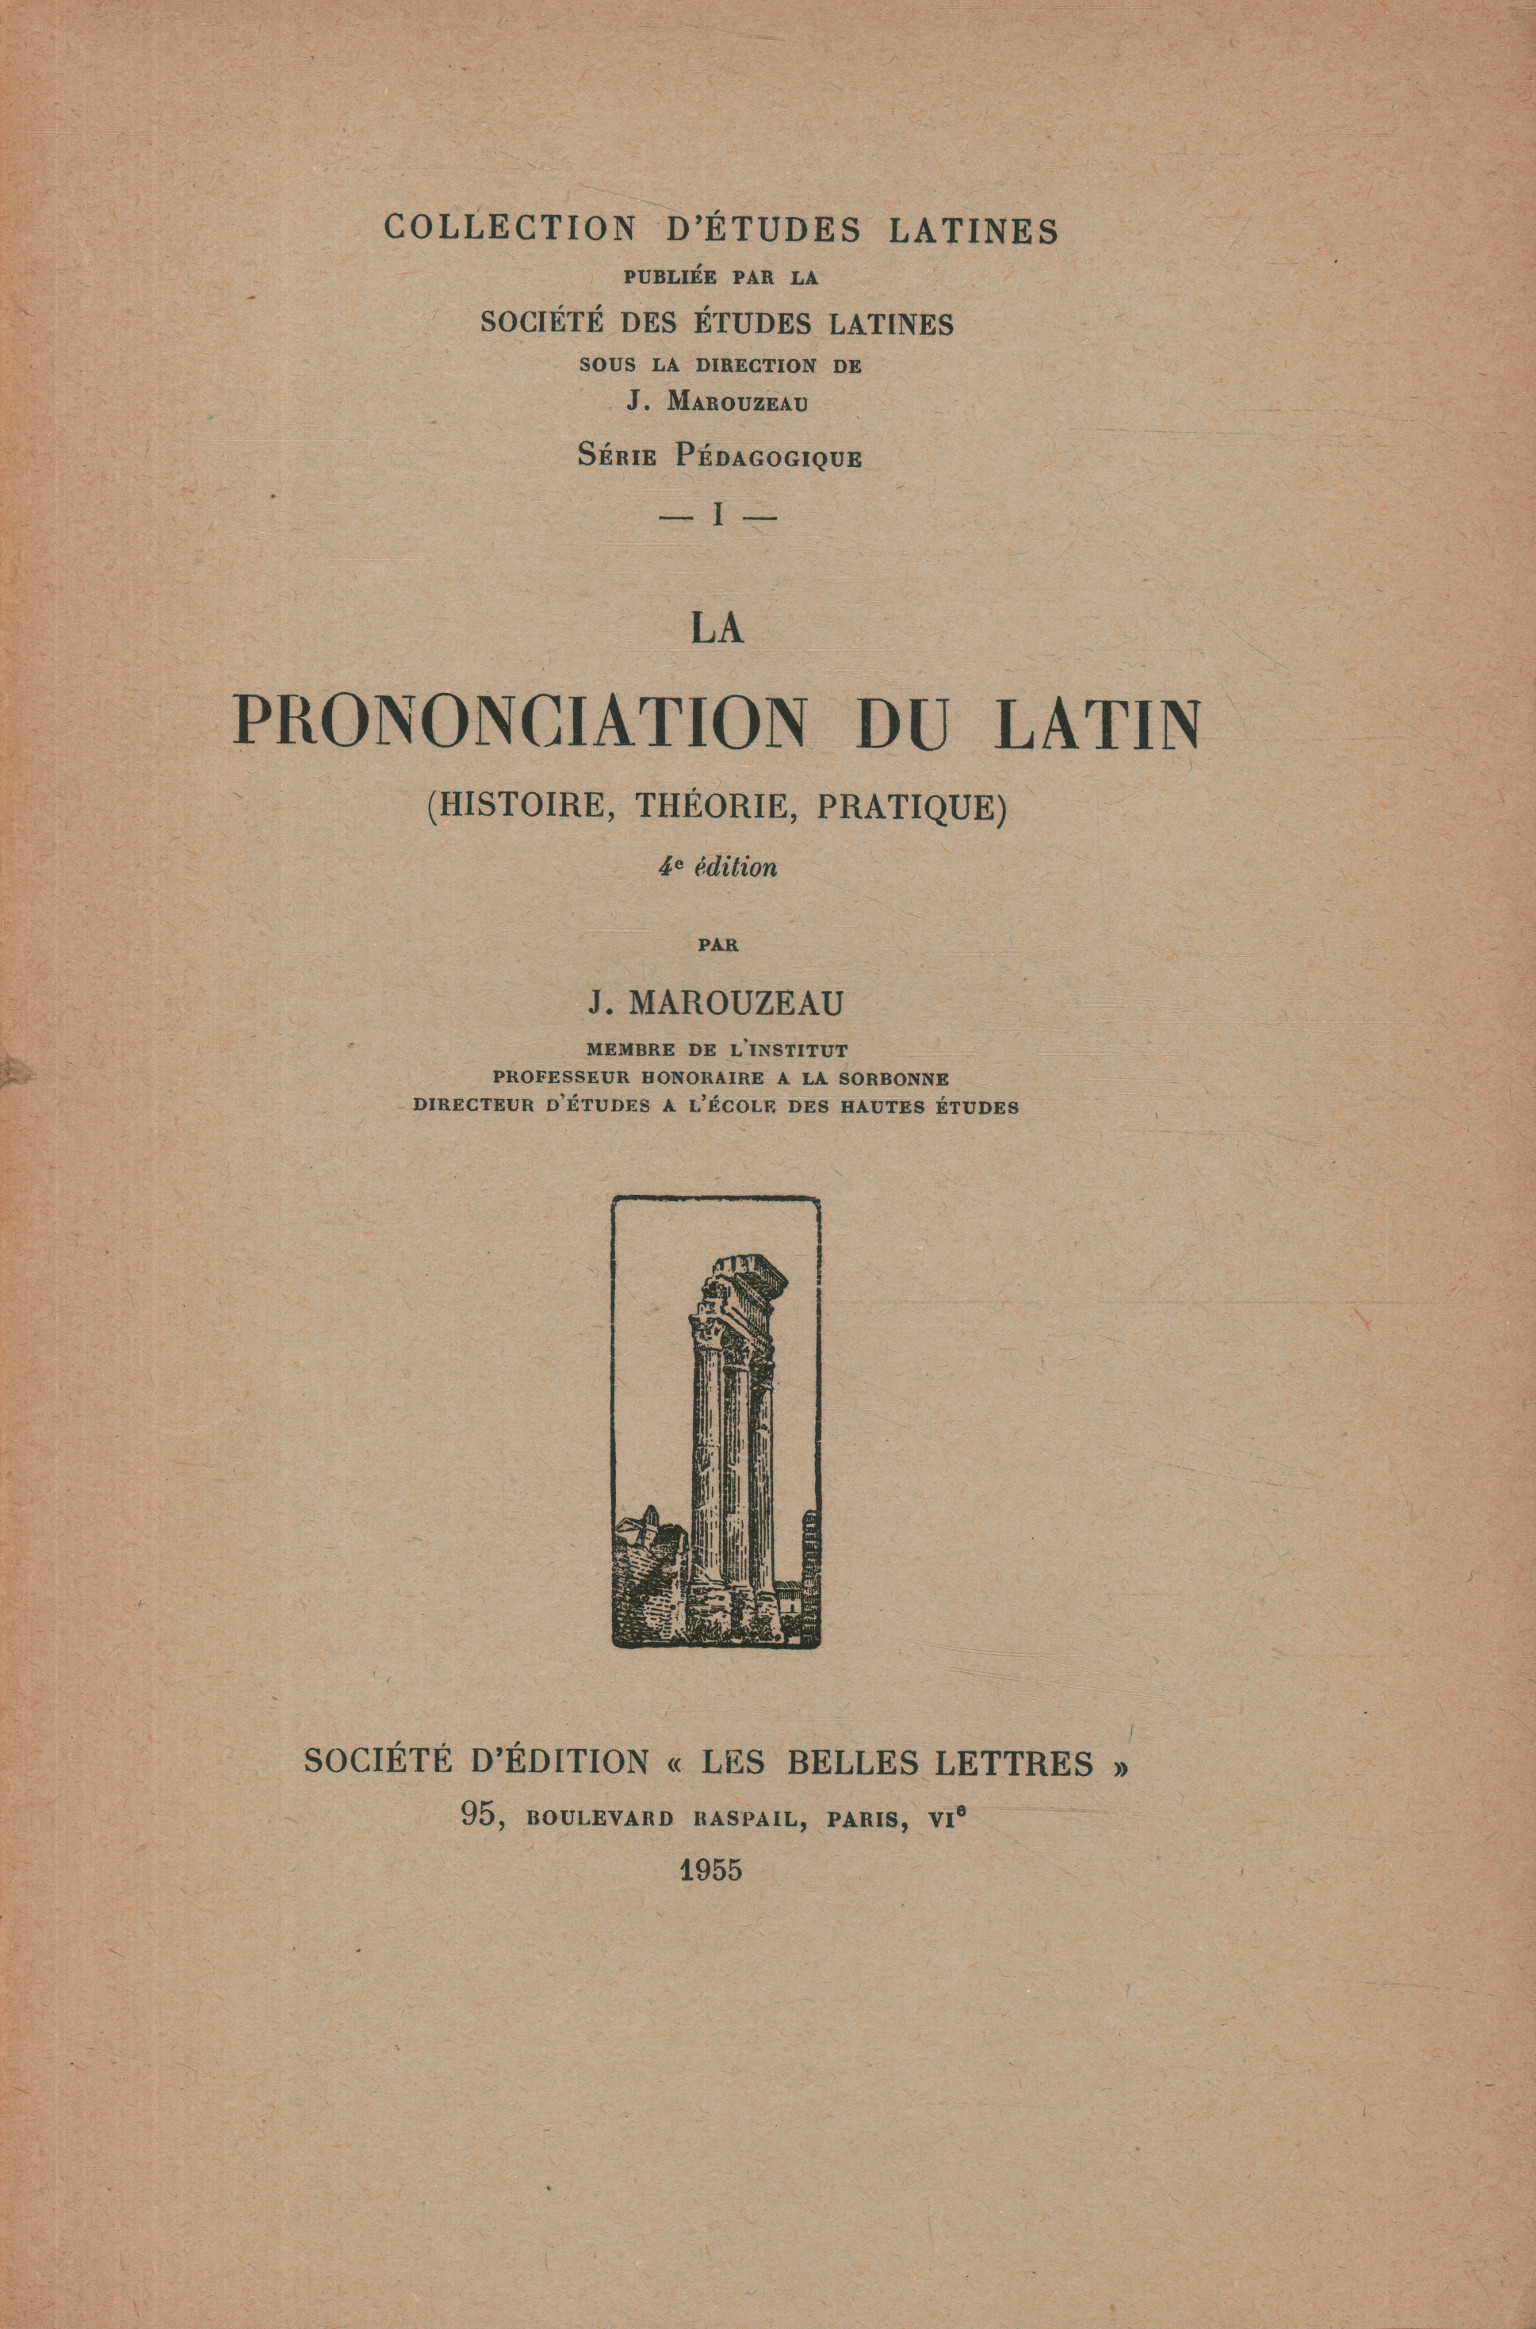 La prononciation du latin